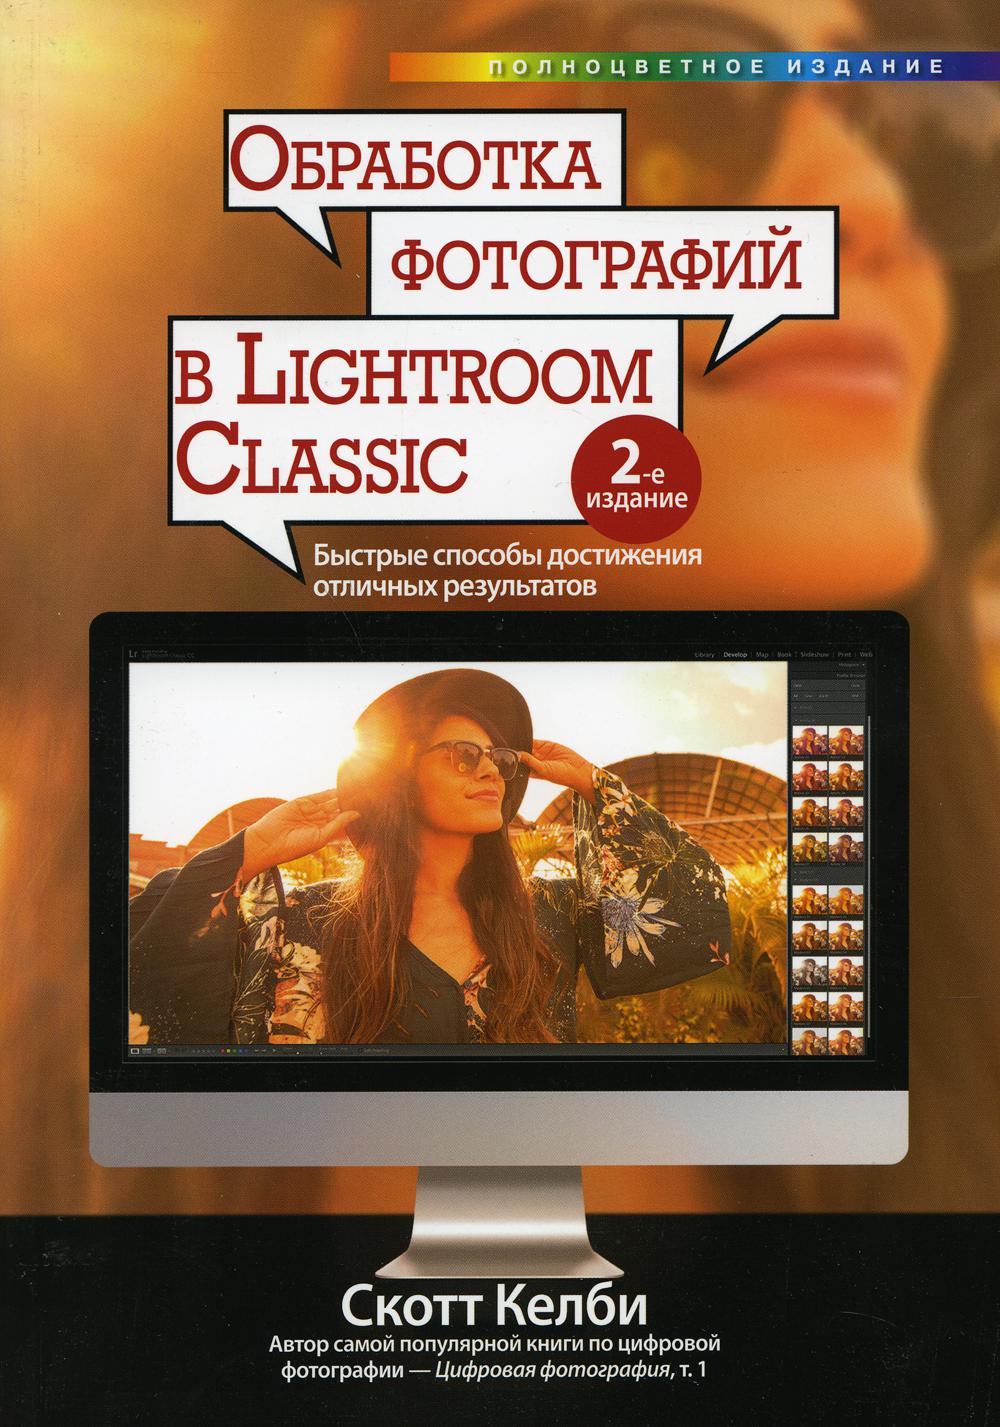 Обработка фотографий в Lightroom Classic: быстрые способы достижения отличных результатов. 2-е изд